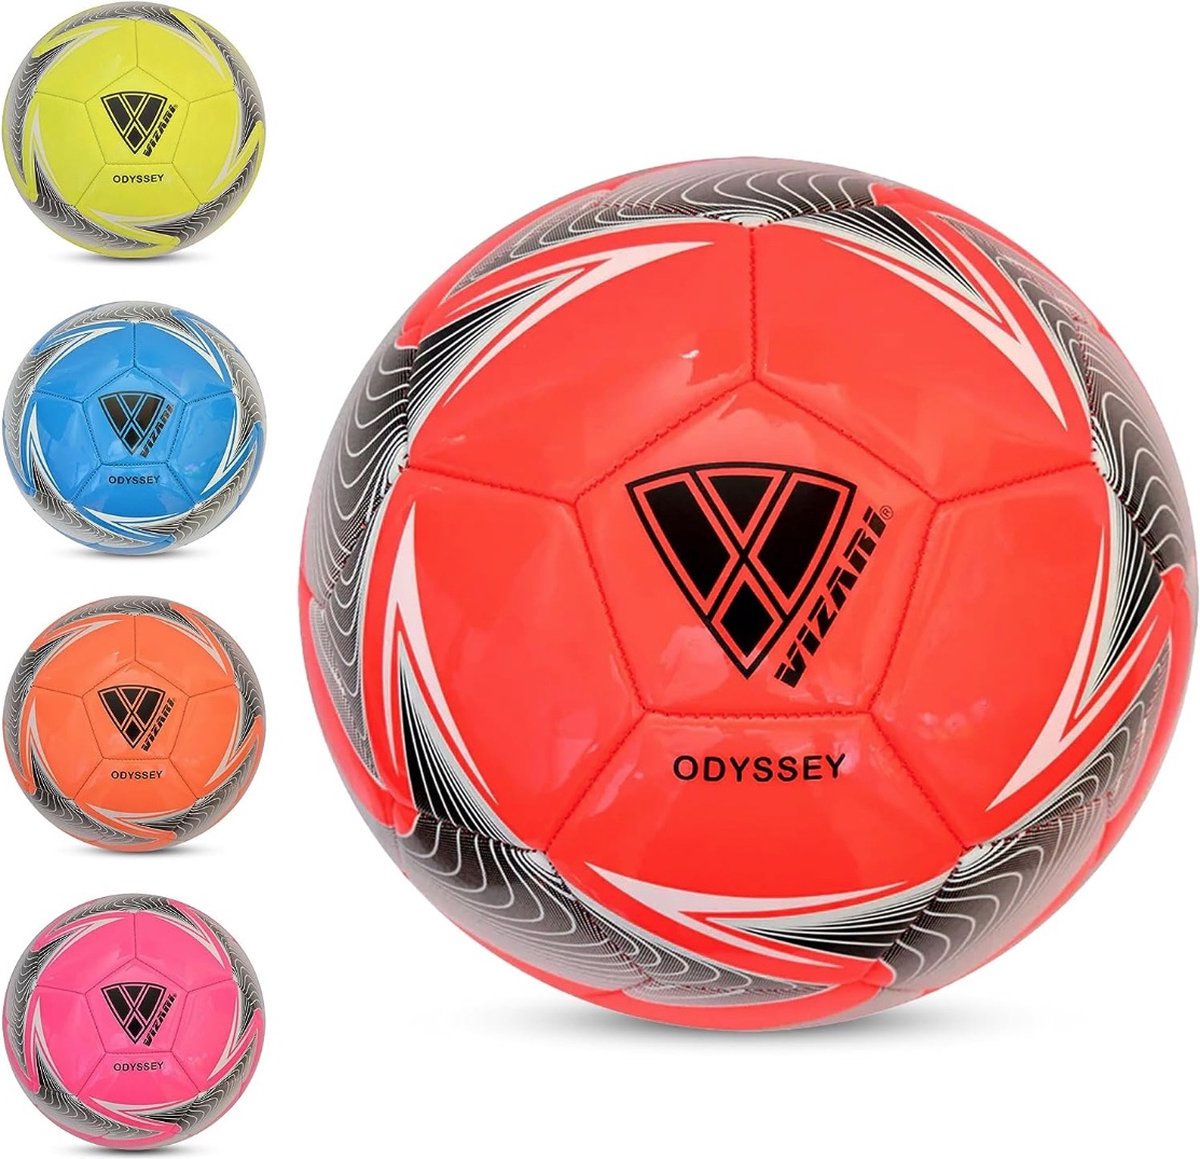 VIZARI ODYSSEY Voetbal | Rood | Maat 5 | Unieke Grafische Ontwerpen | Voetballen voor Kinderen & Volwassenen | Verkrijgbaar in 4 Kleuren